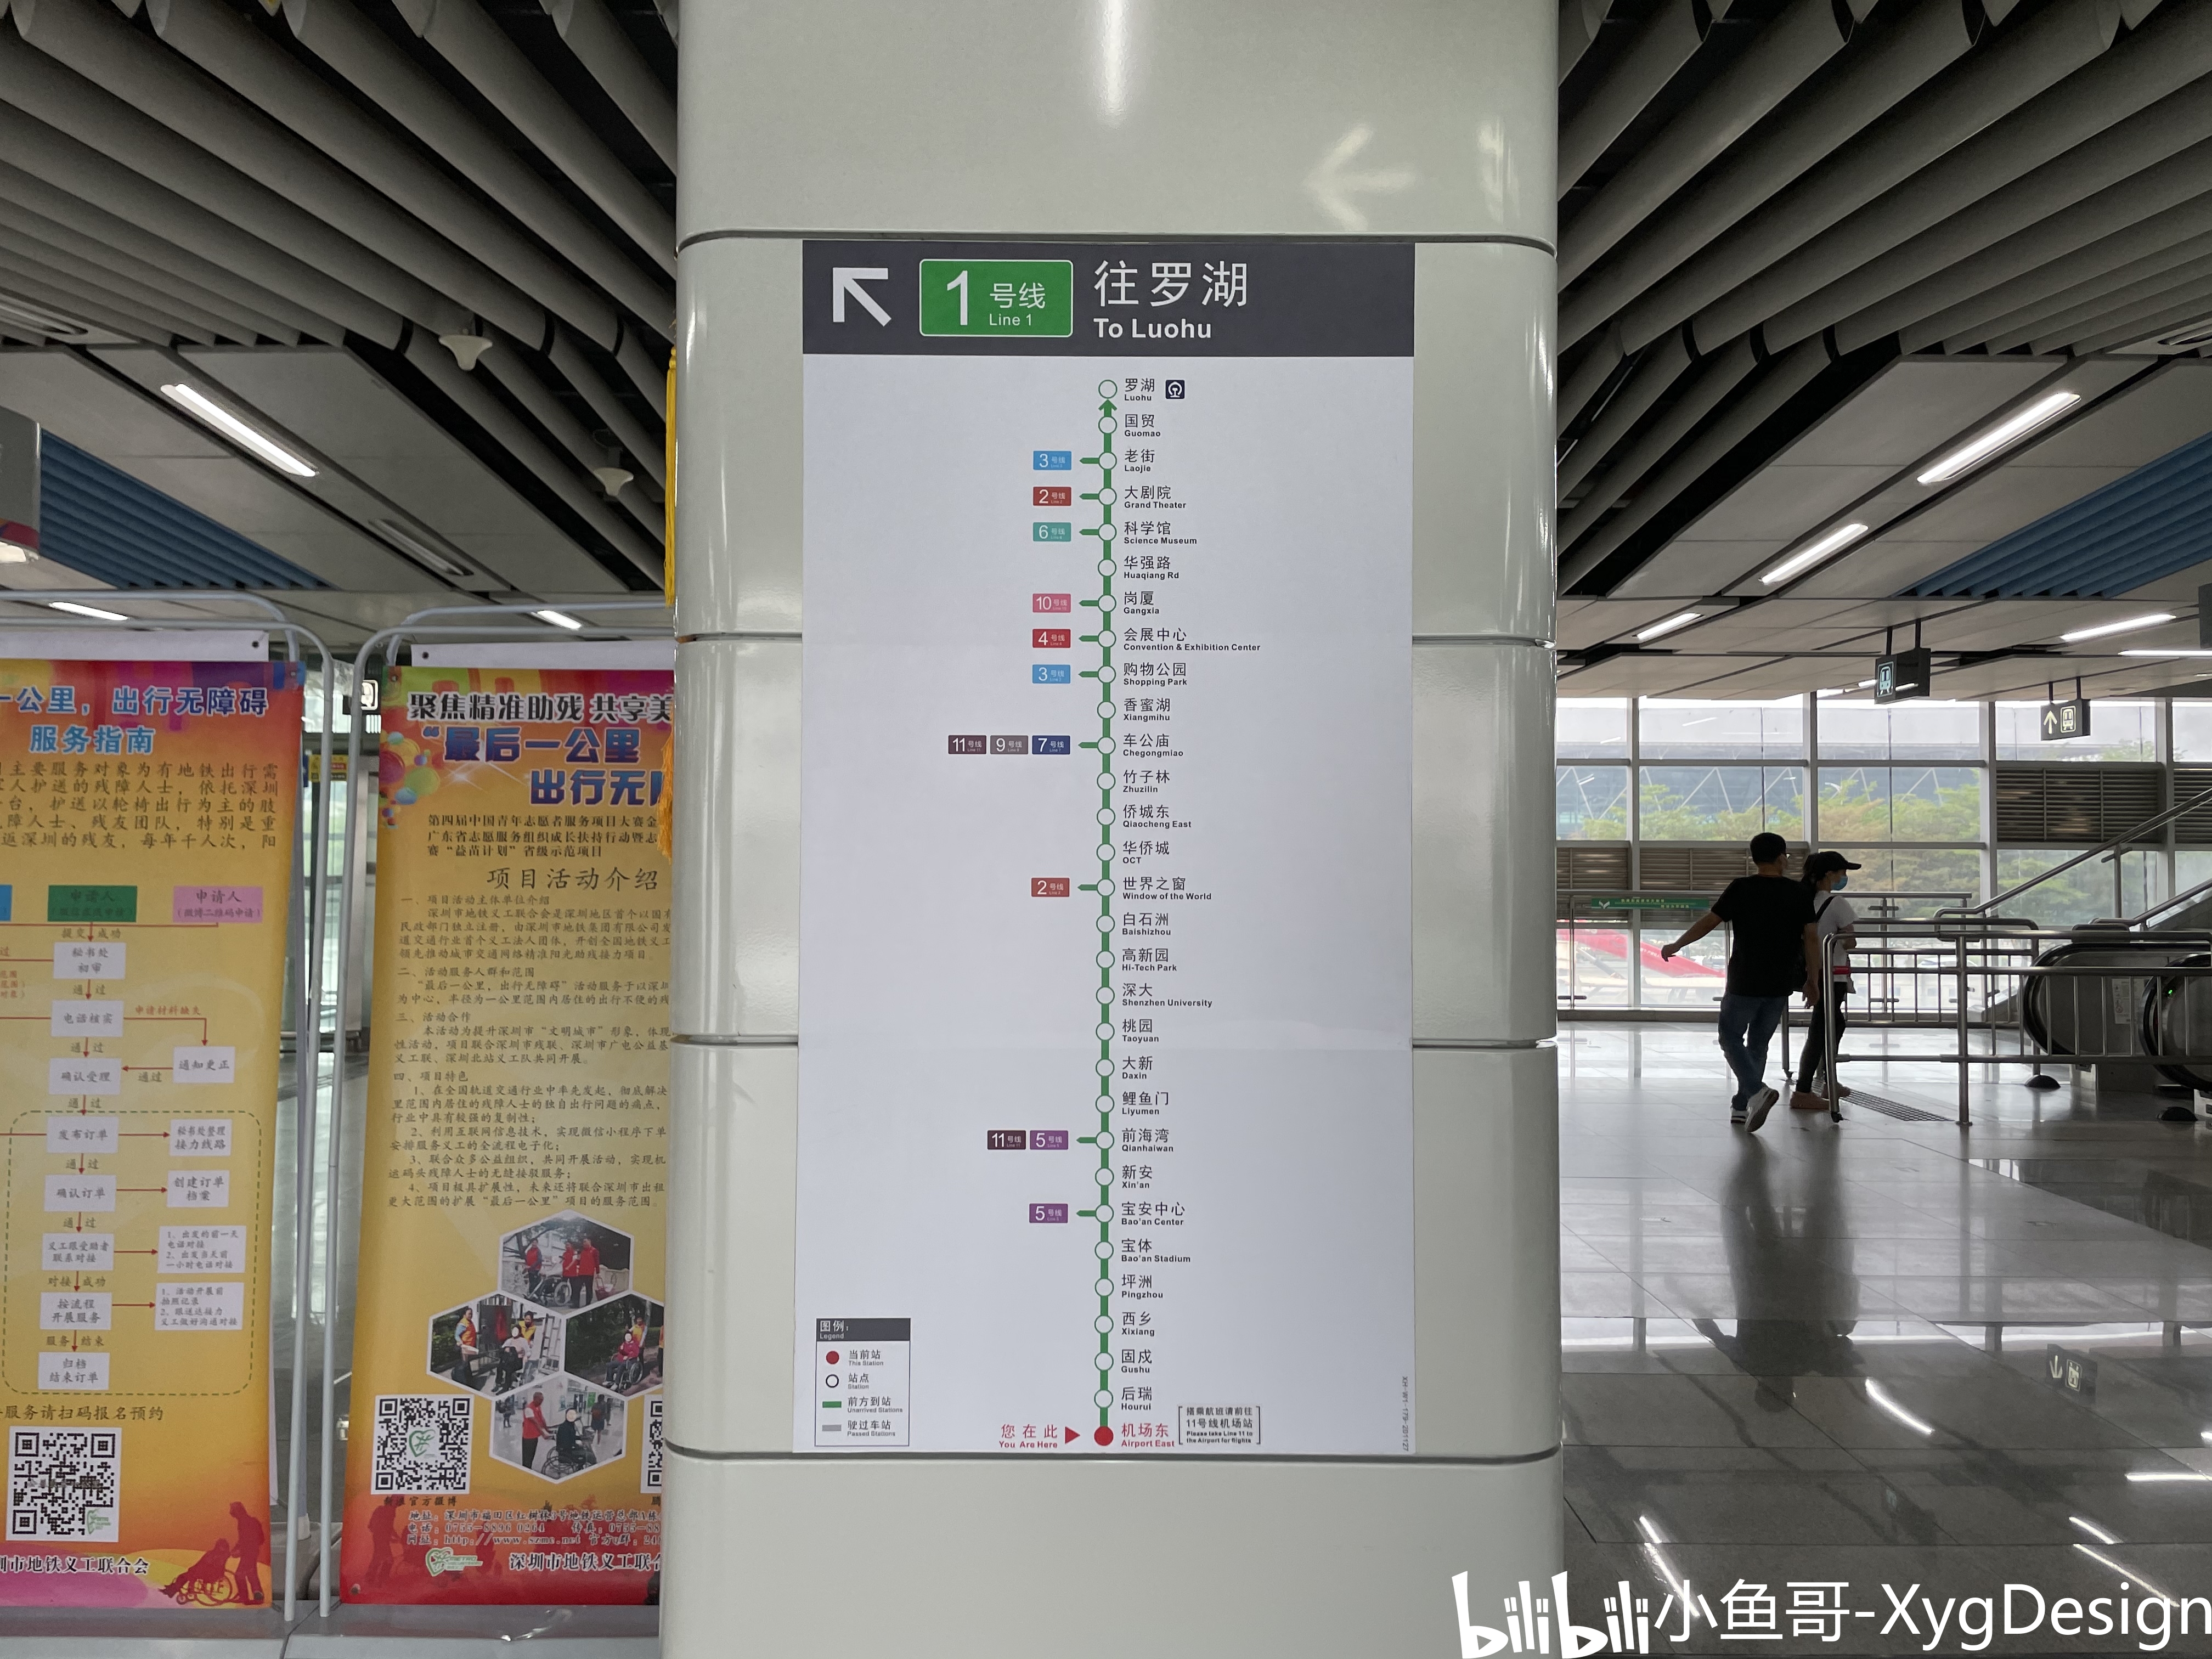 2021.3.27 深圳地铁运转记录